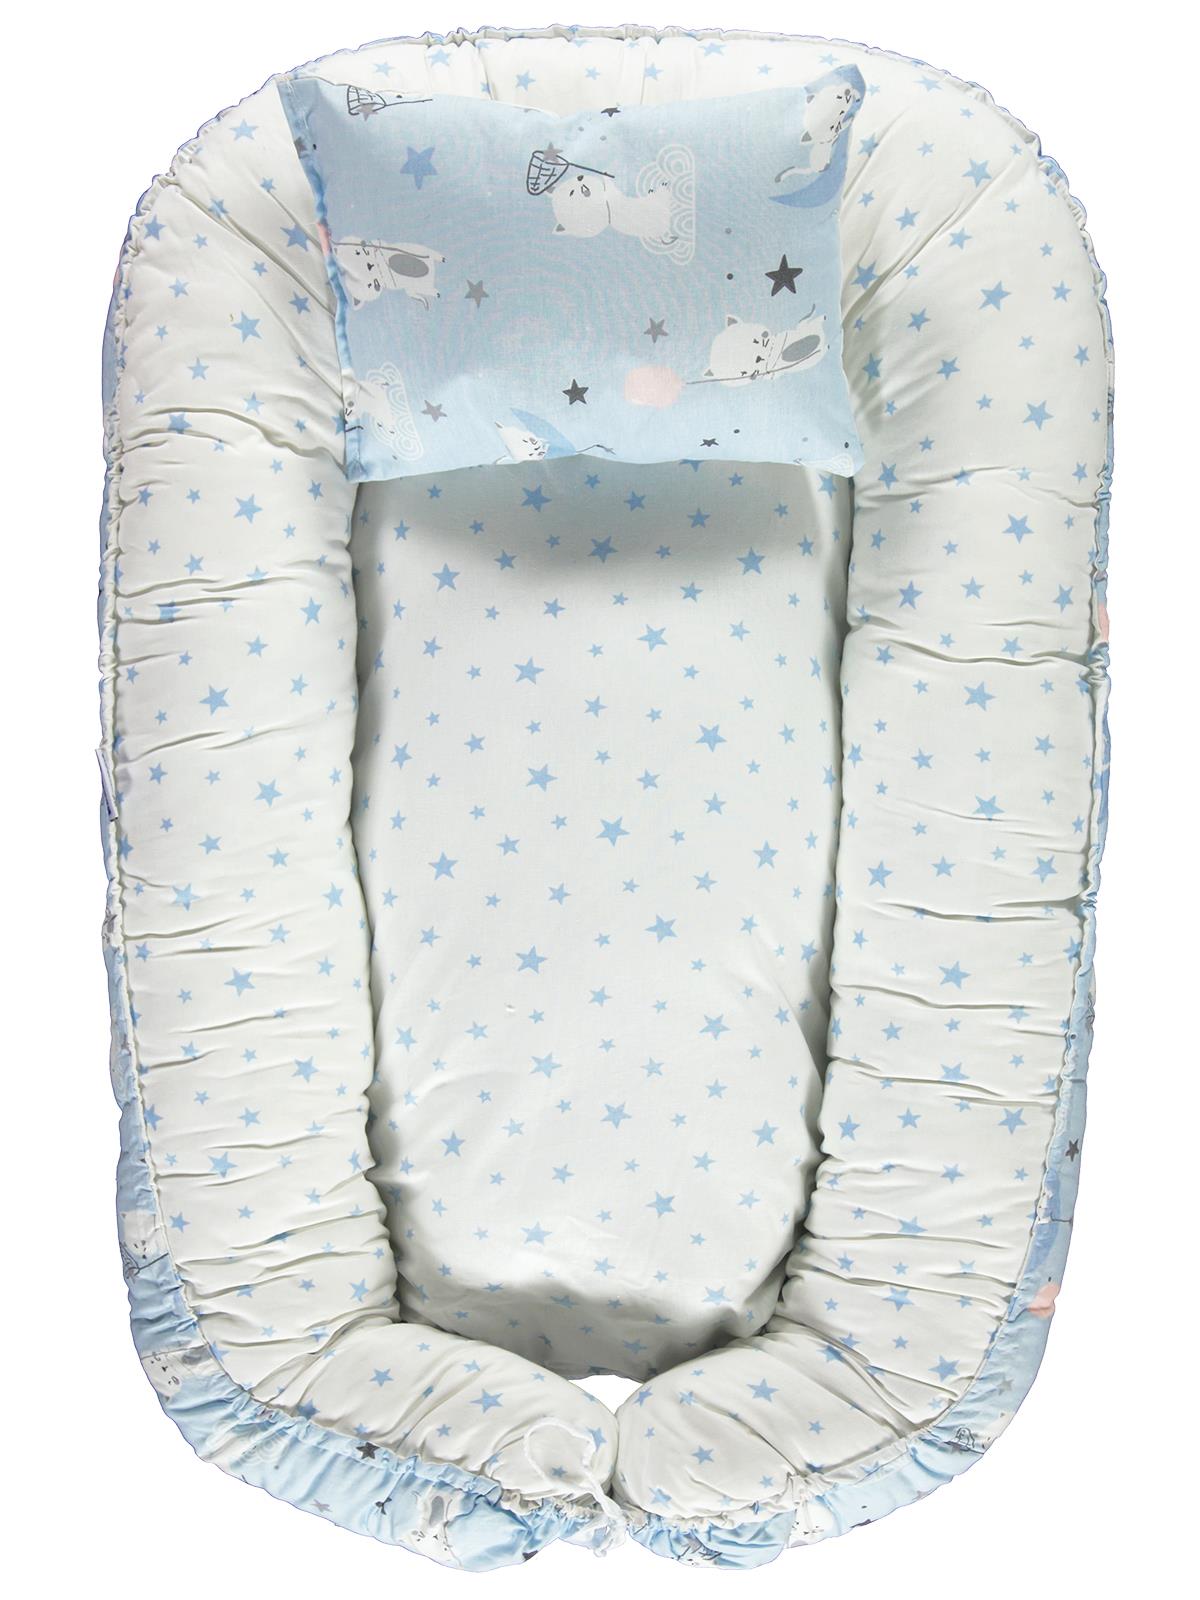 Kujju Babynest Bebek Uyku Yatağı 45x70 cm Beyaz-Mavi